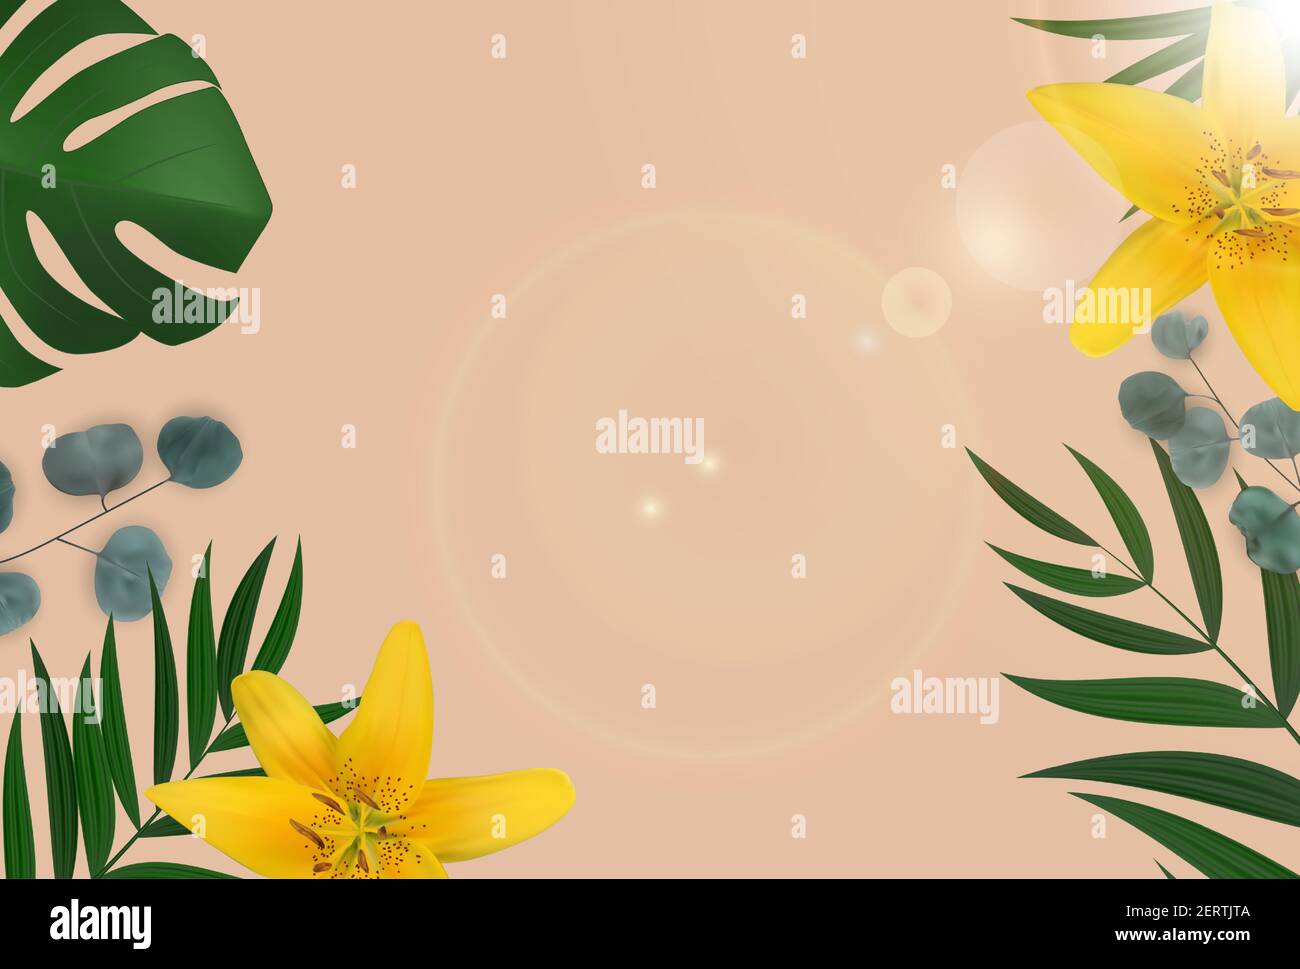 Résumé fond naturel avec palmier tropical, feuilles d'eucalyptus et fleur de lilly. Illustration vectorielle EPS10 Illustration de Vecteur